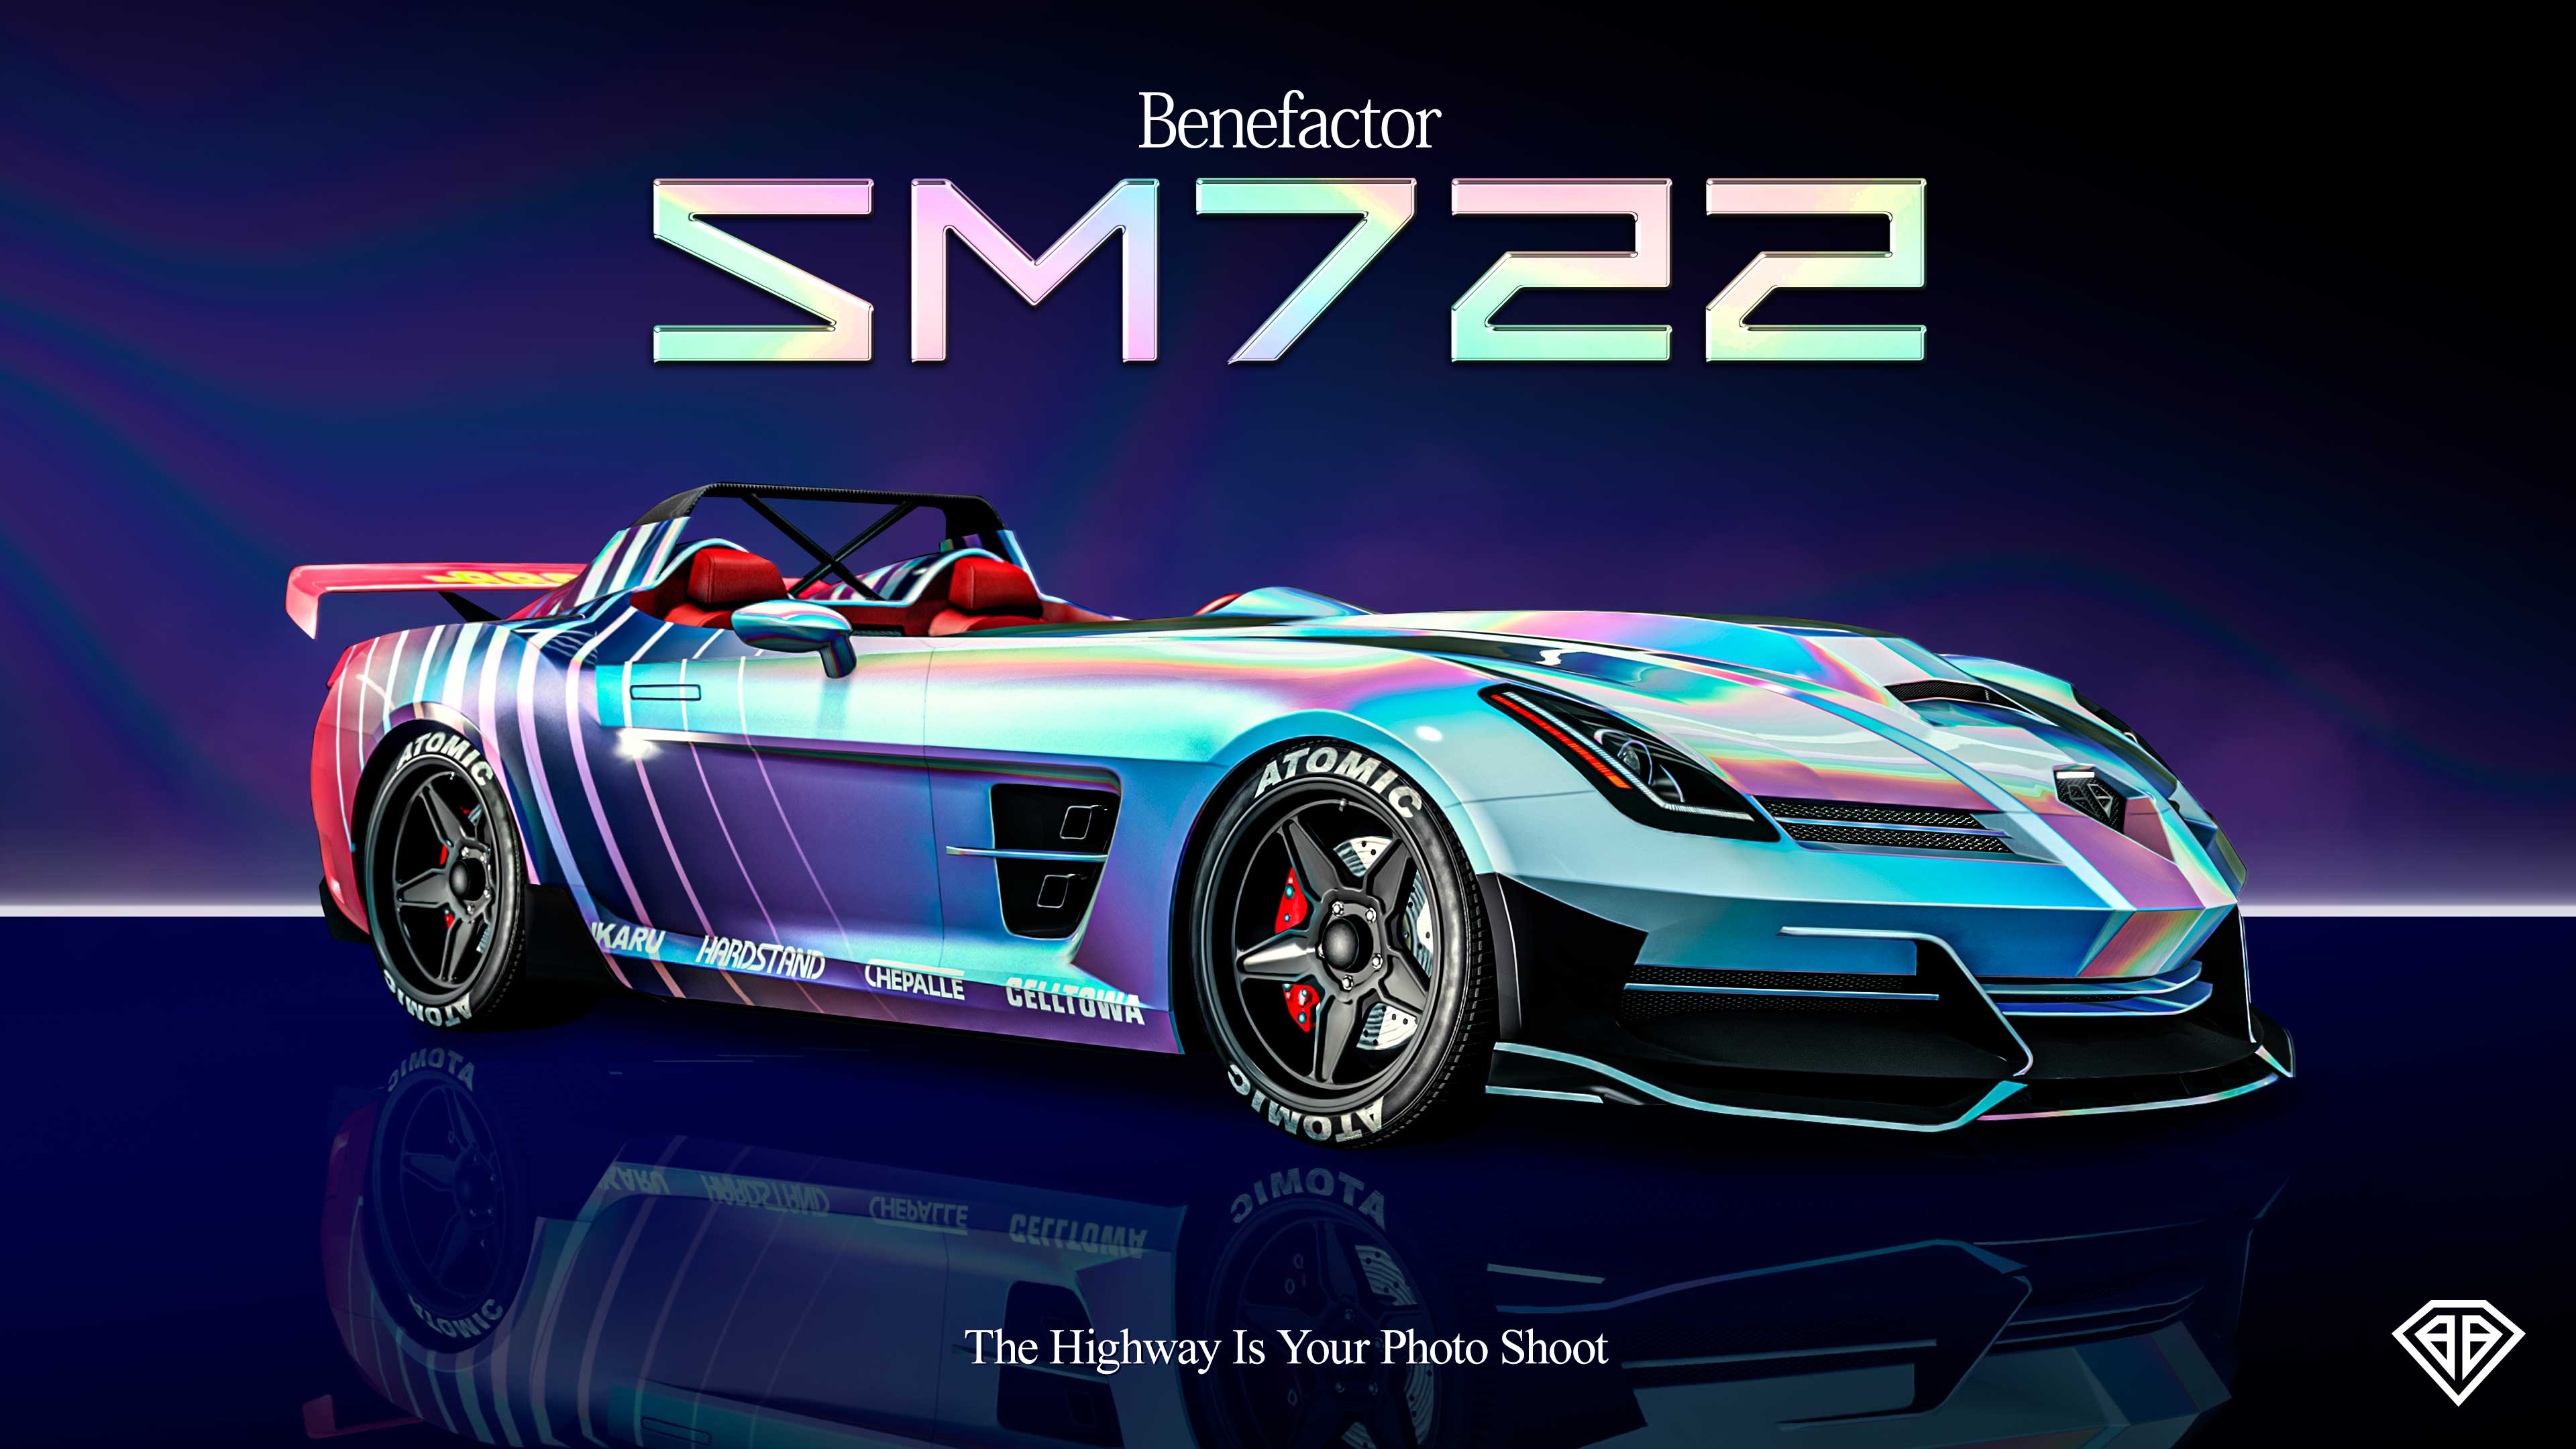 GTA Online Benefactor SM722